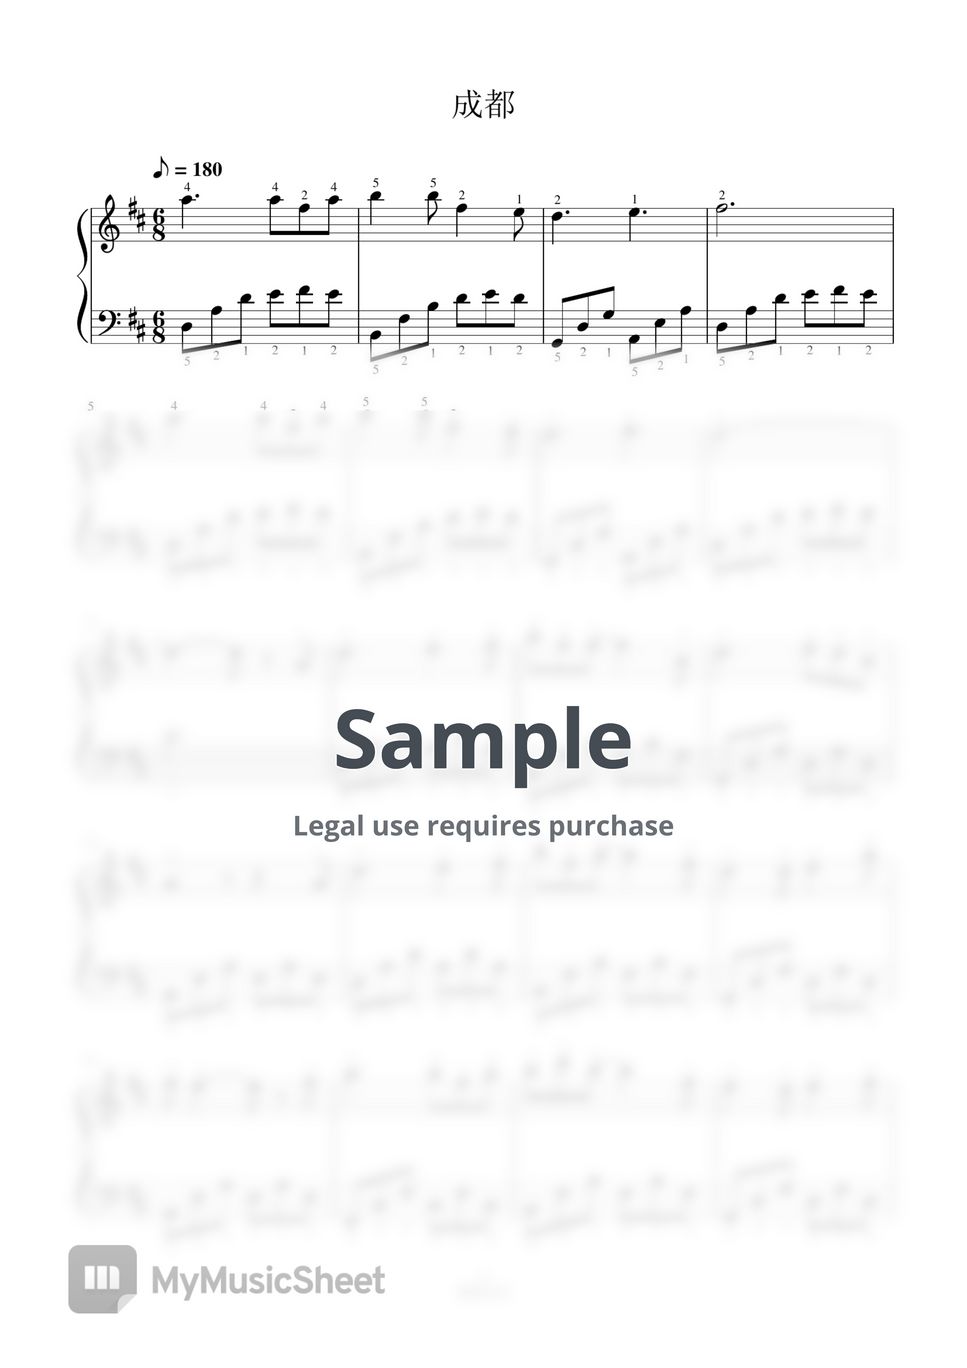 赵雷 - 成都-全指法钢琴谱高清正版完整版 (Full Fingering Piano Score) by 紫韵音乐